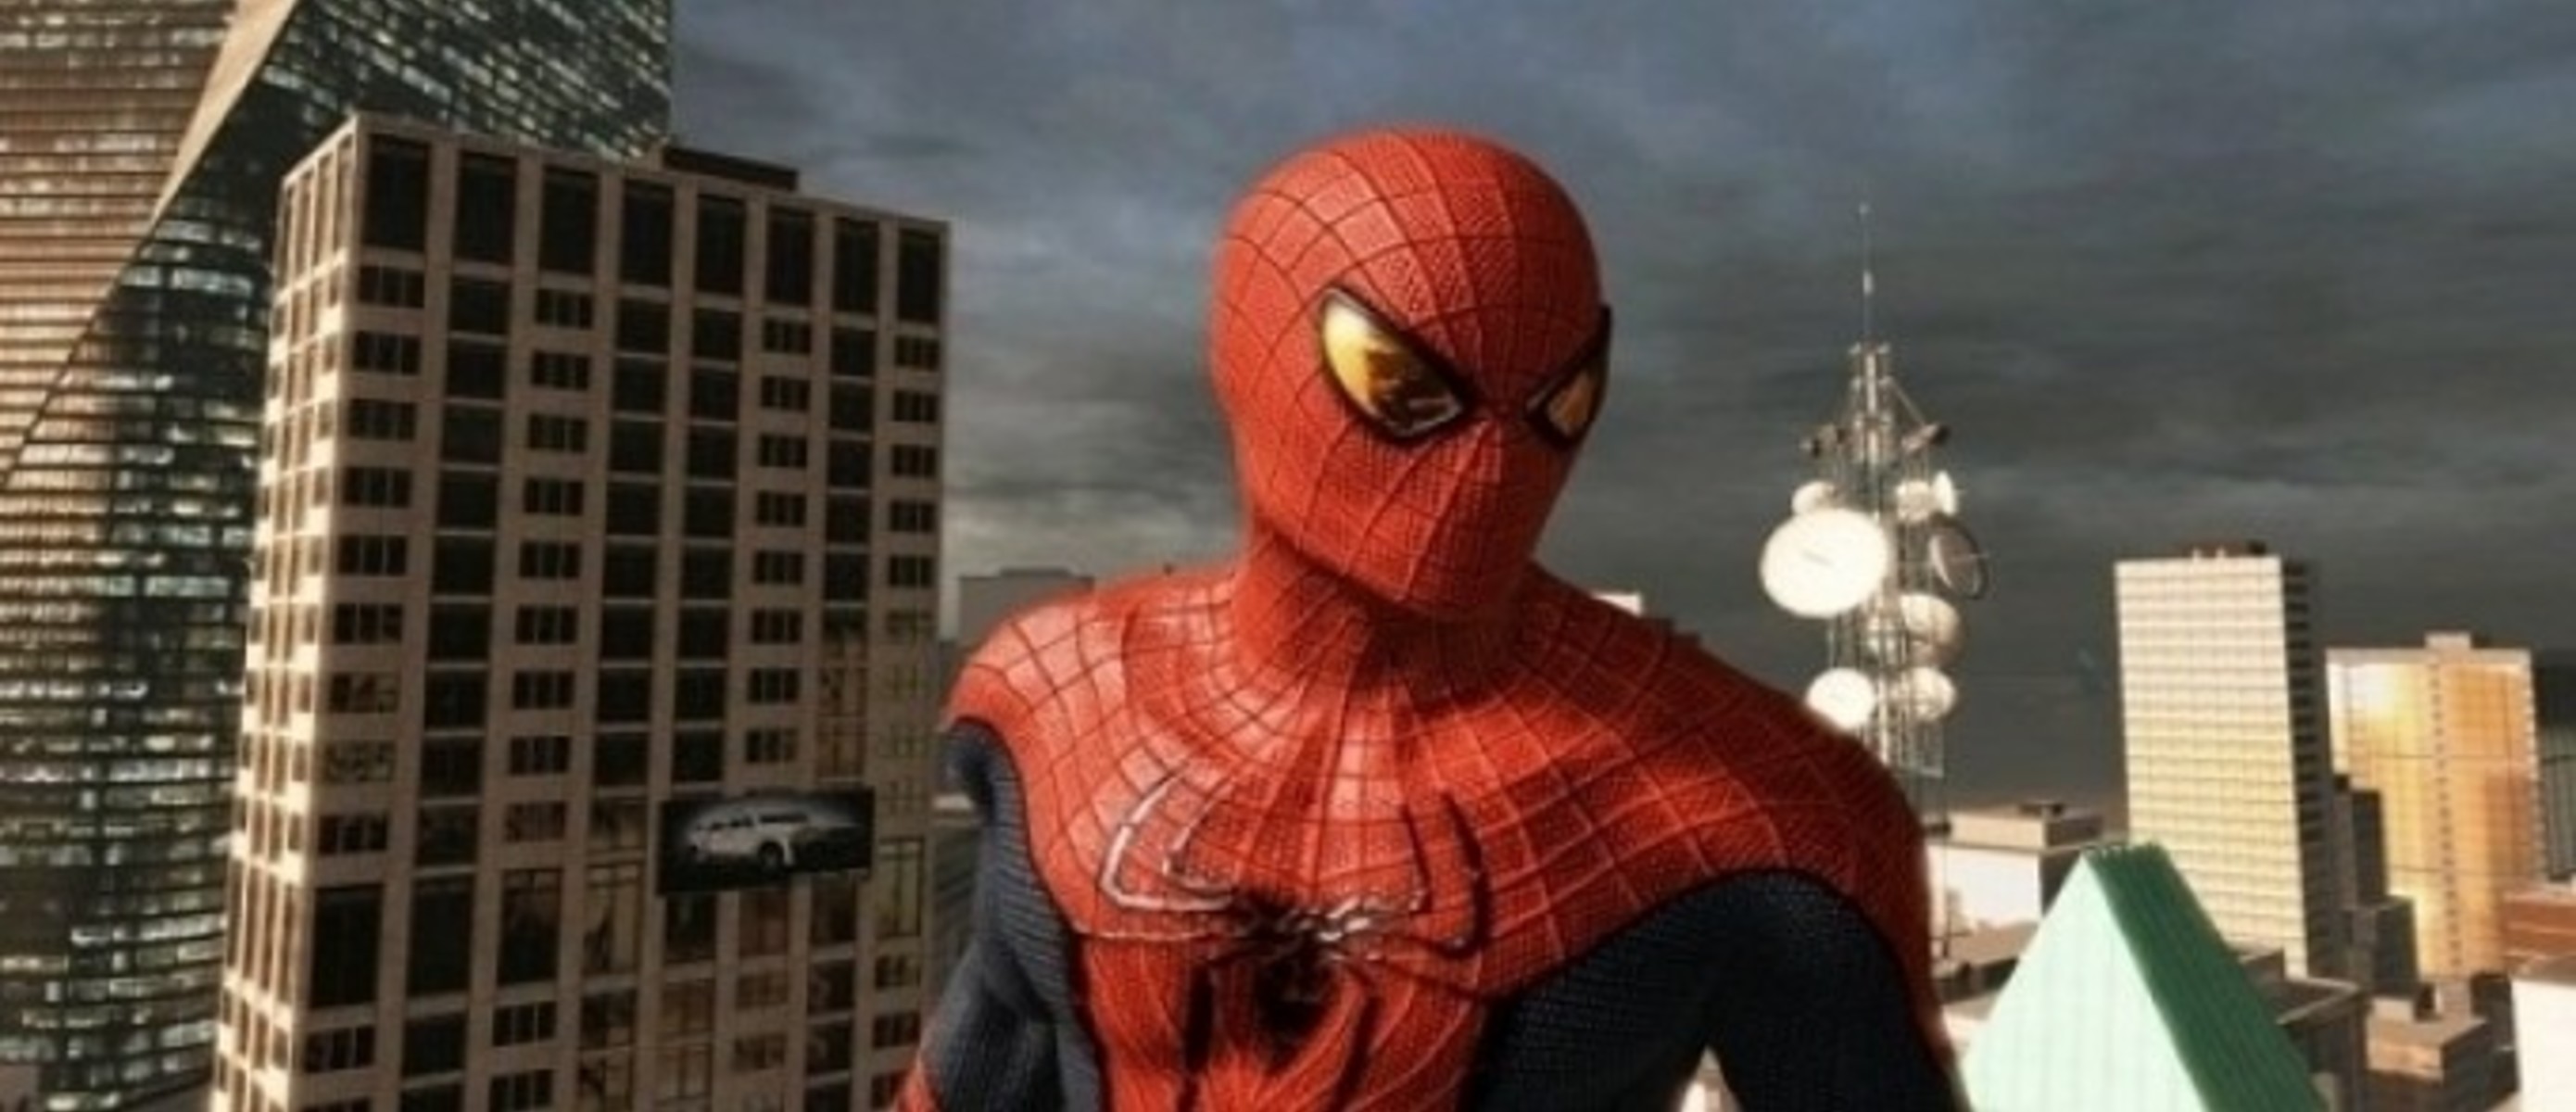 Маркет человек паук. The amazing Spider-man (игра, 2012). Новый человек паук 1 (amazing Spider-man 1). The amazing Spider-man 2 игра. Спайдер Мэн 2012.